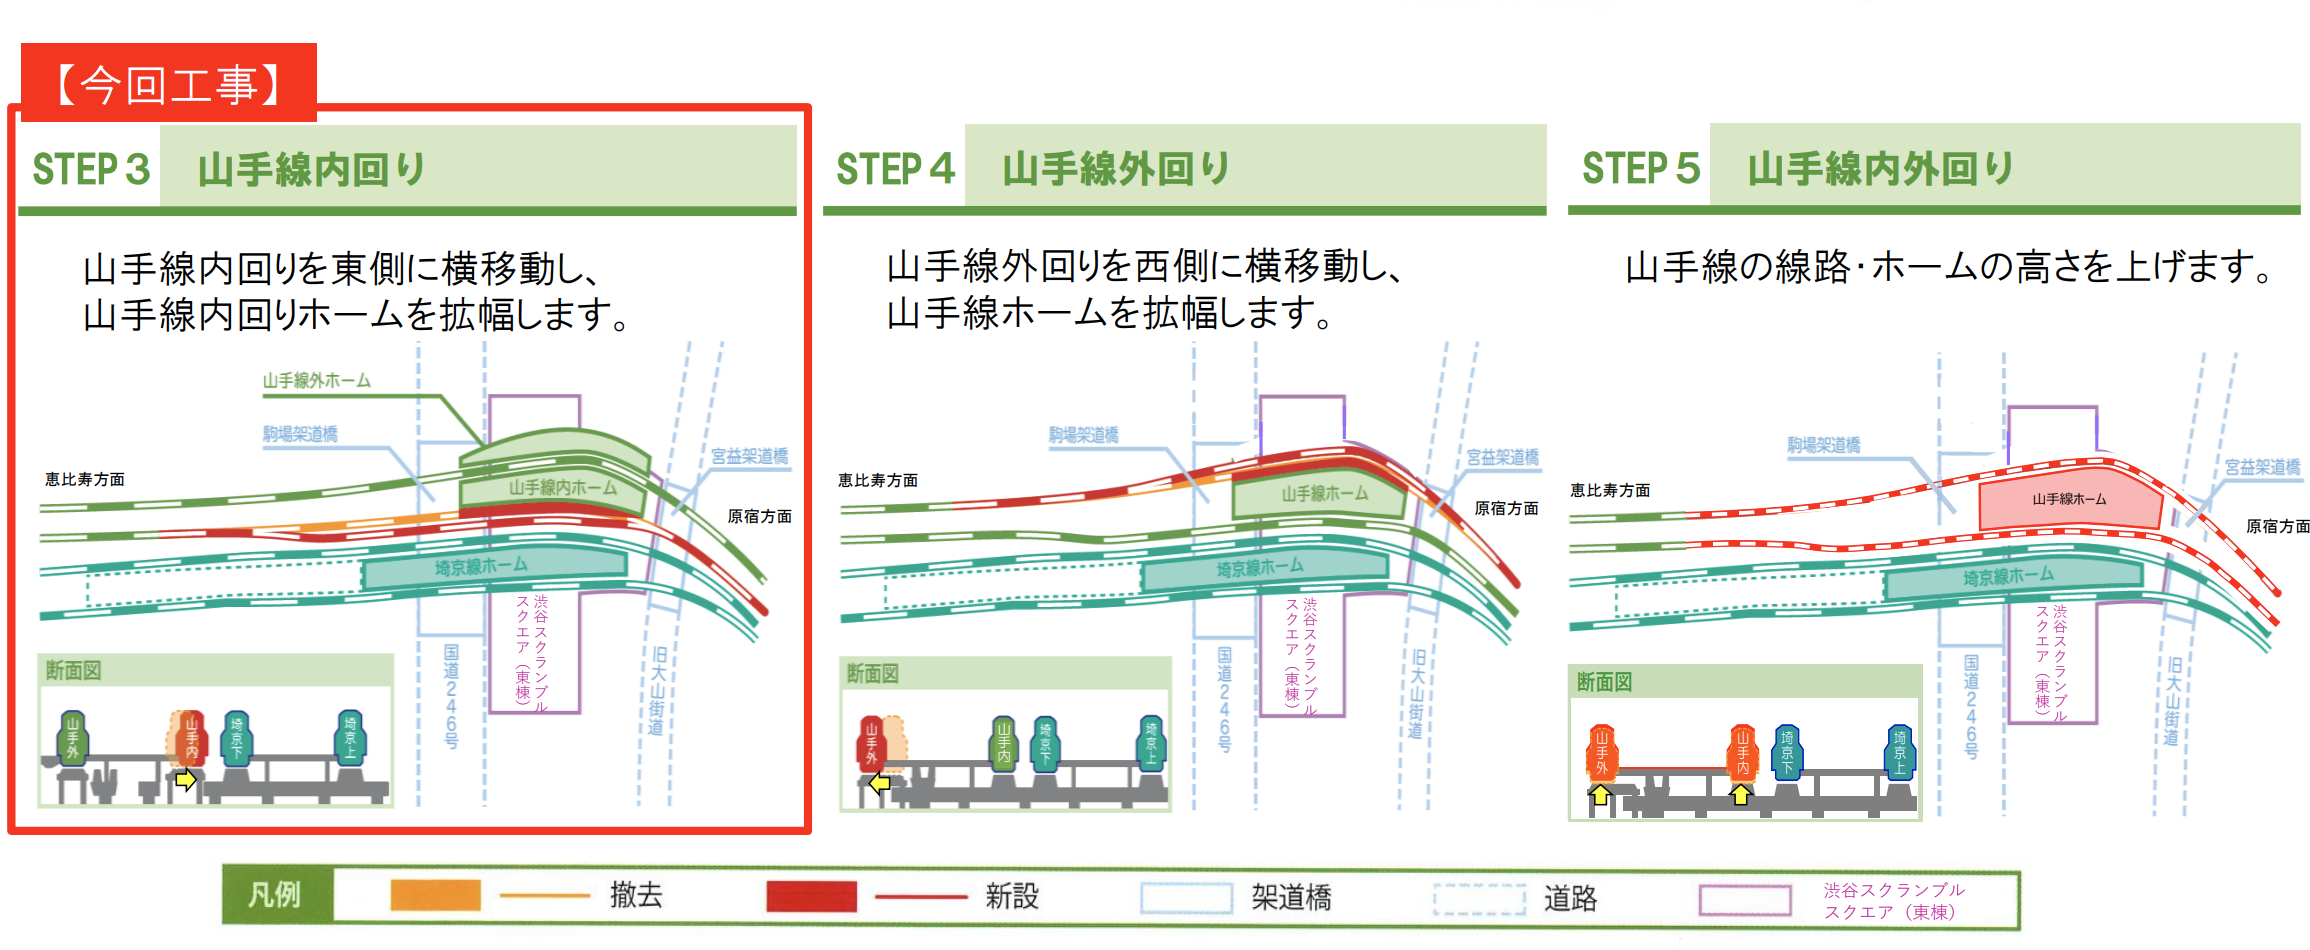 Die grüne Linien sind die Gleise der Yamanote. In Zukunft werden die äussere und die innere Linie auf derselben Bahnsteiginsel halten (siehe Step 5)